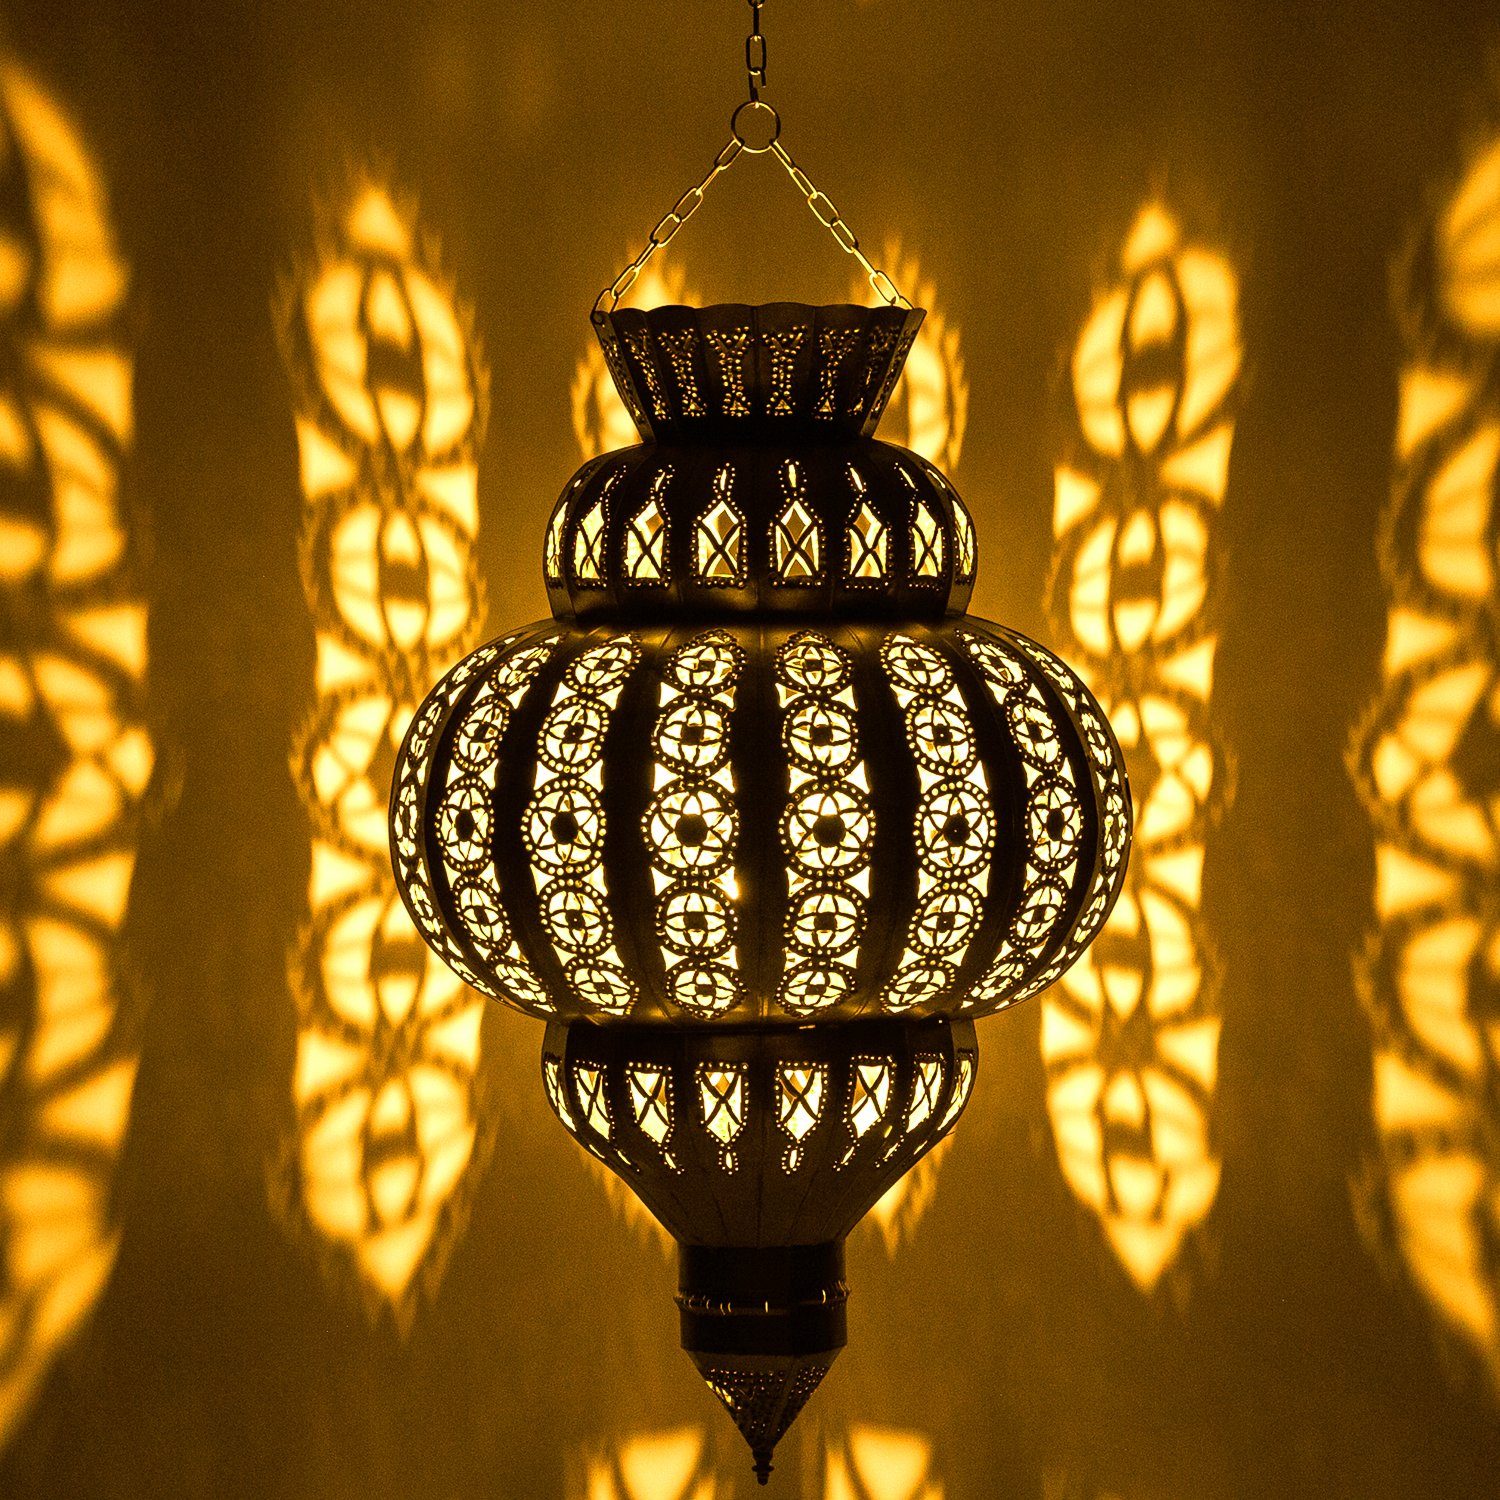 Marrakesch Orient & Mediterran Interior Deckenleuchte Orientalische Lampe  Pendelleuchte Harima Gold 60cm E27 Lampenfassung, Marokkanische Design  Hängeleuchte Leuchte aus Marokko, Orient Lampen für Wohnzimmer, Küche oder  Hängend über den Esstisch